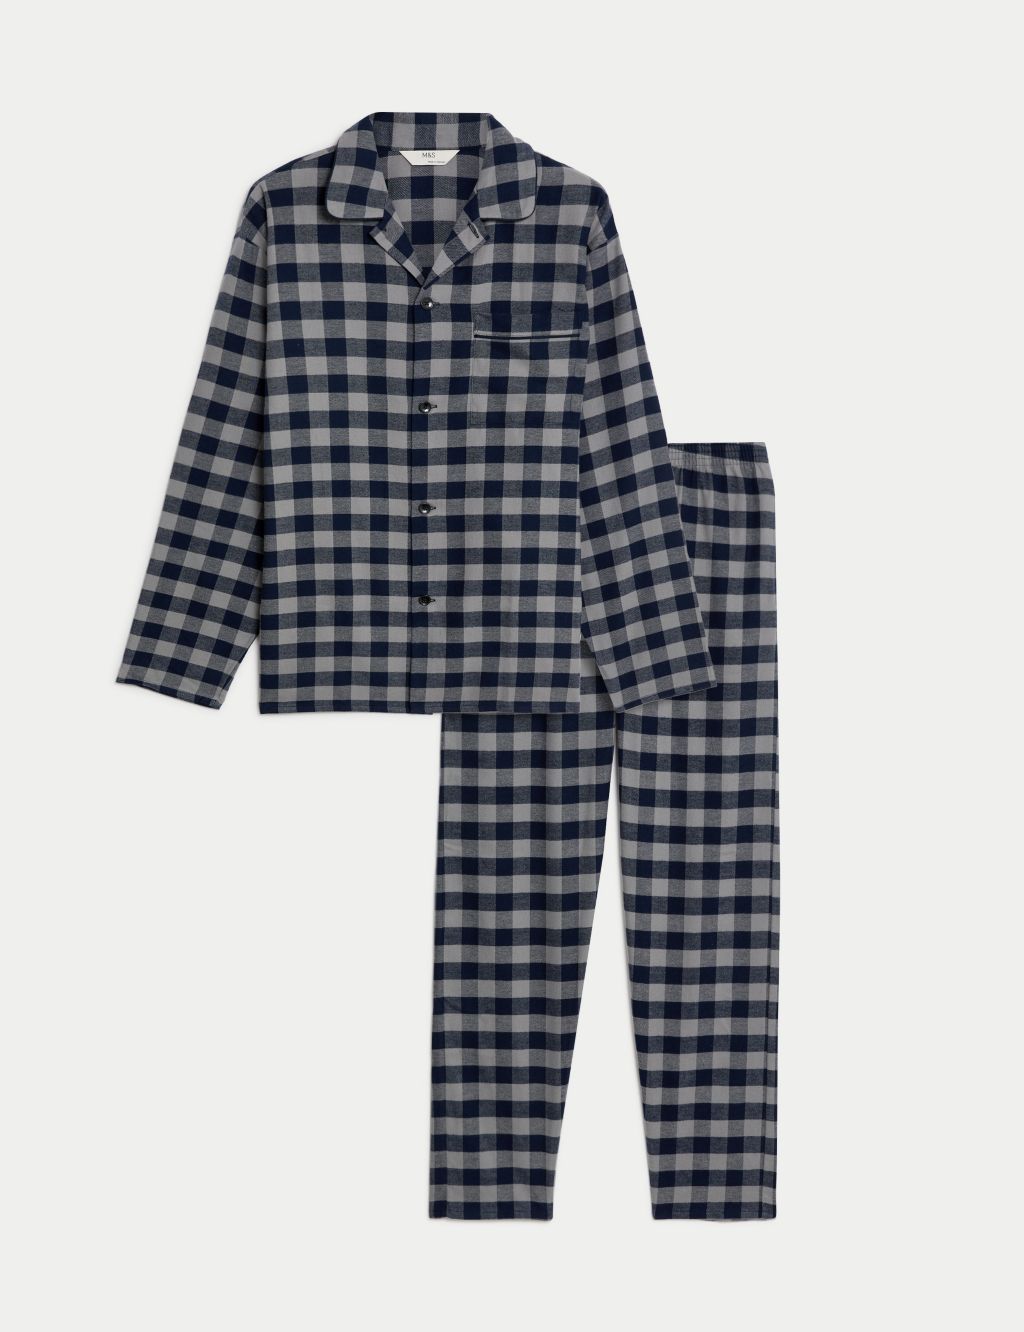 Brushed Cotton Checked Pyjama Set image 1